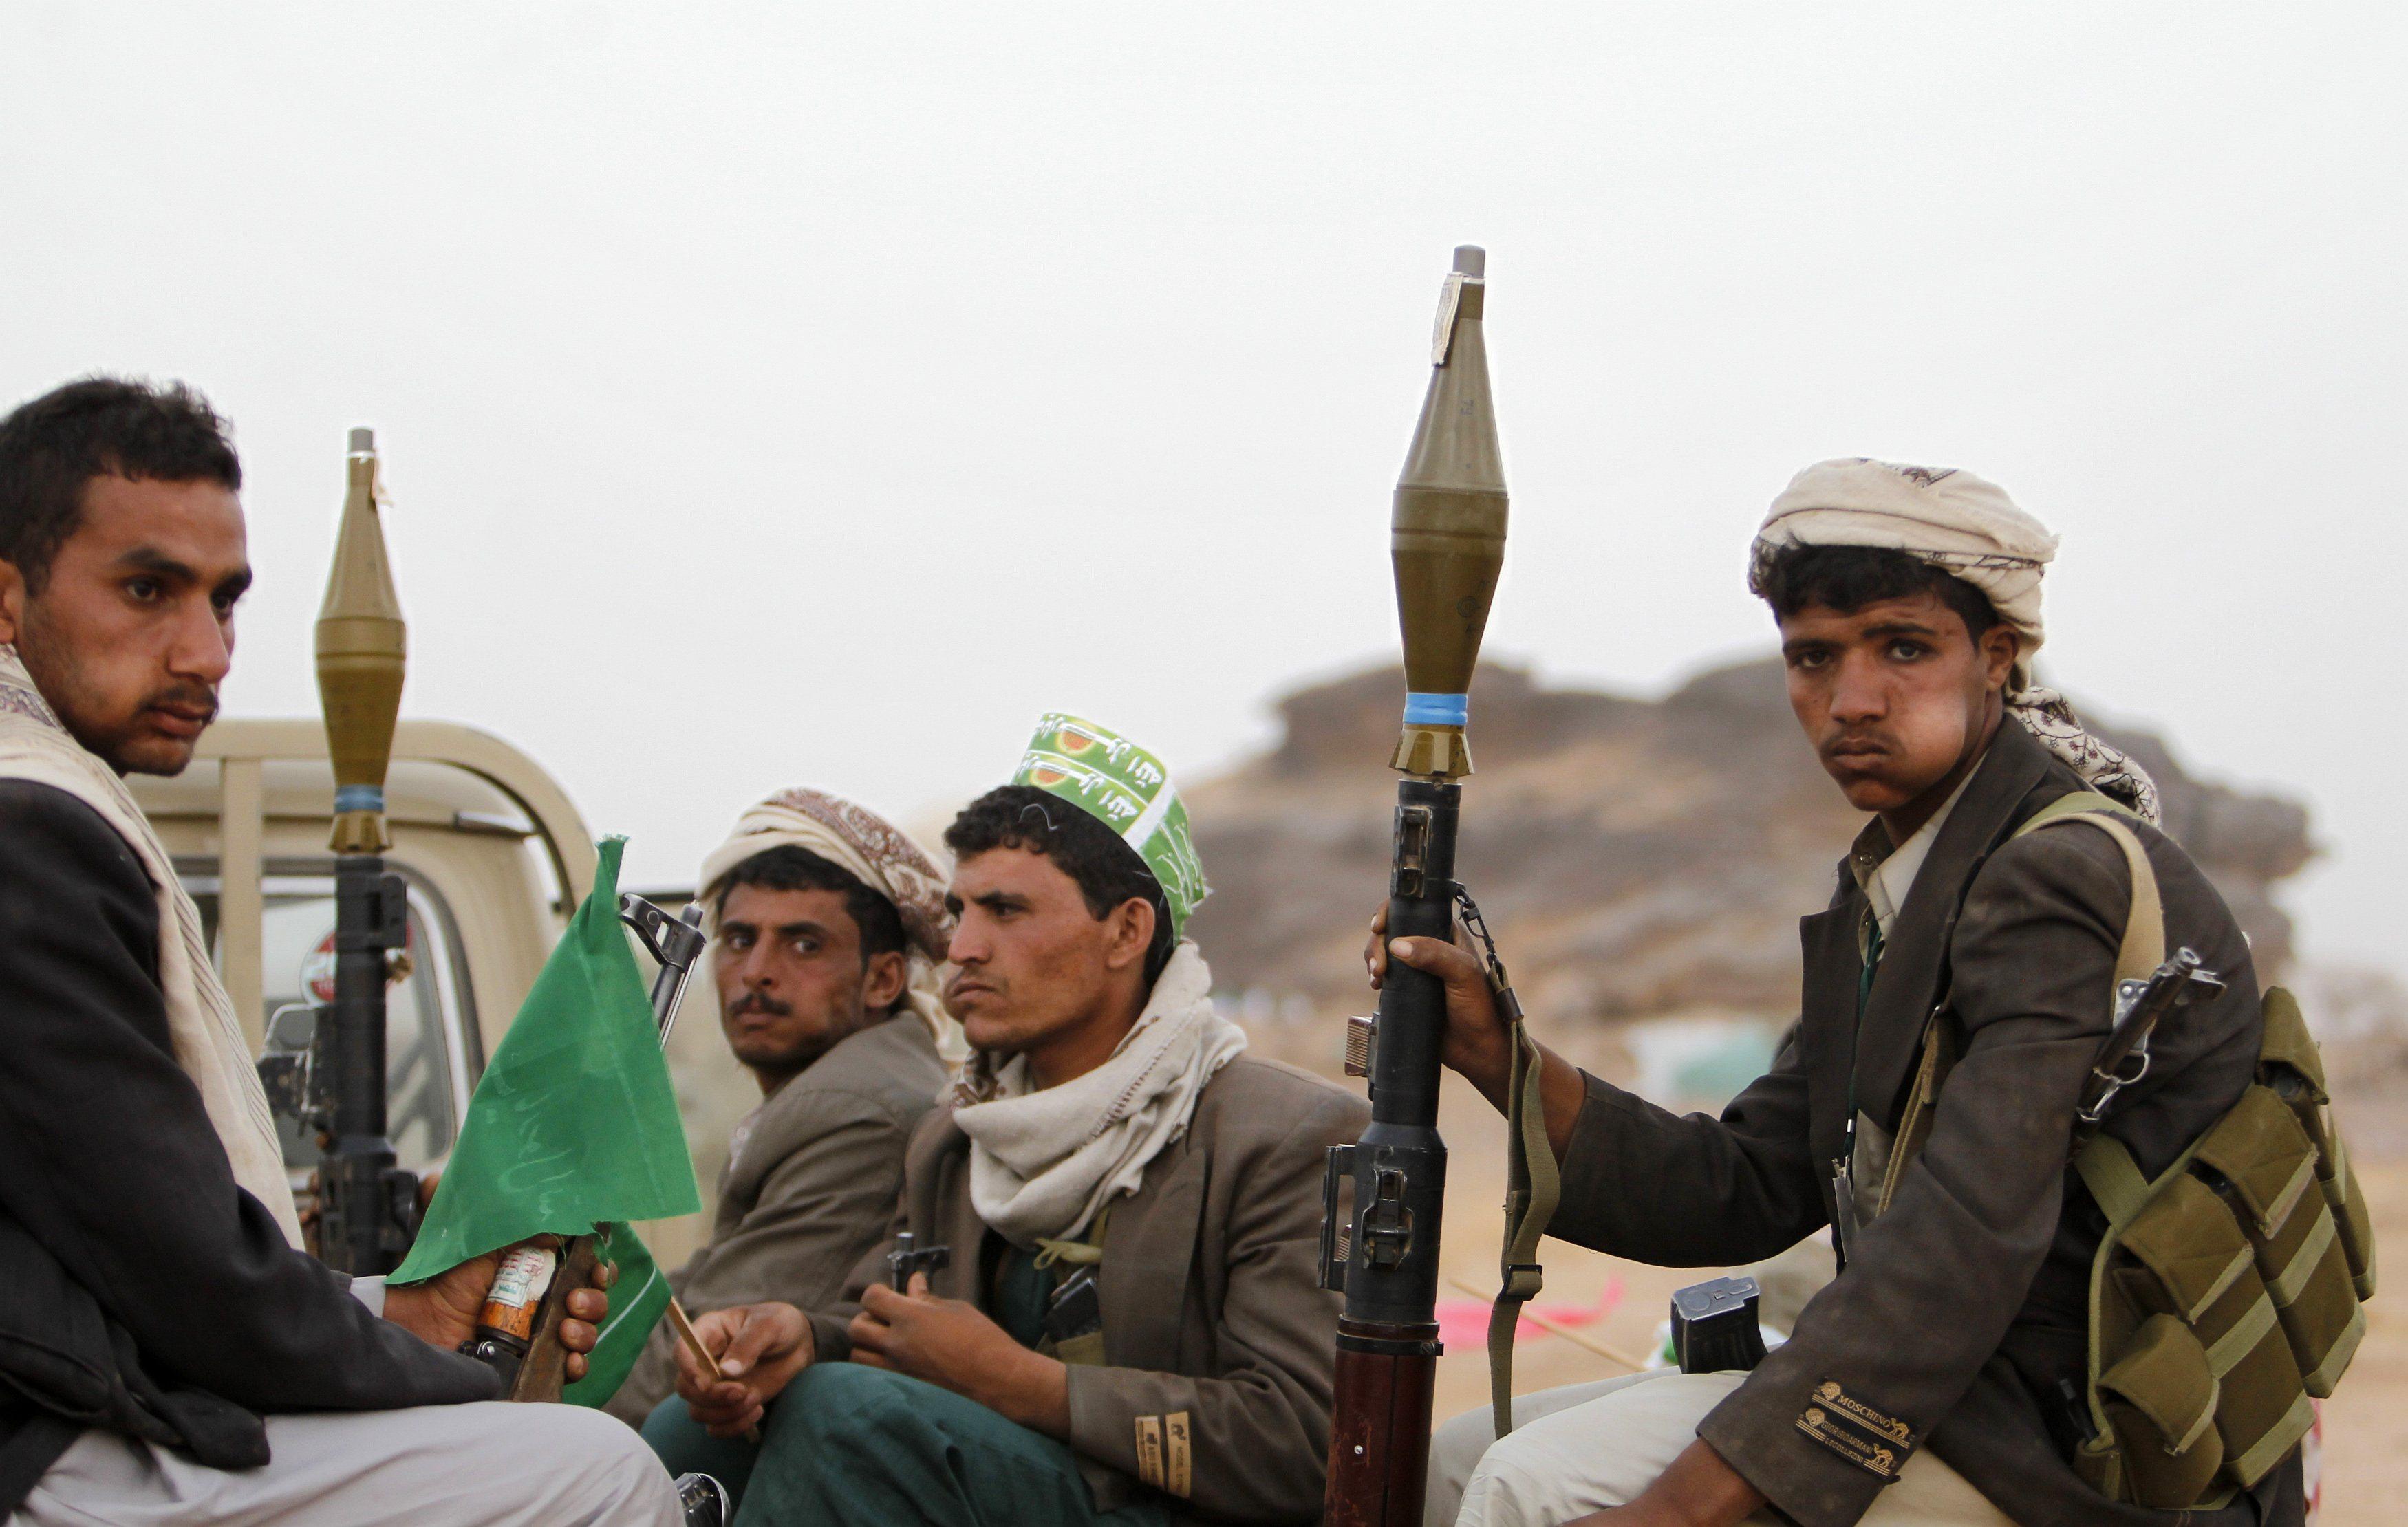 التحالف يلتزم بحماية المدنيين في #اليمن والحوثي يتخذهم دروعا بشرية